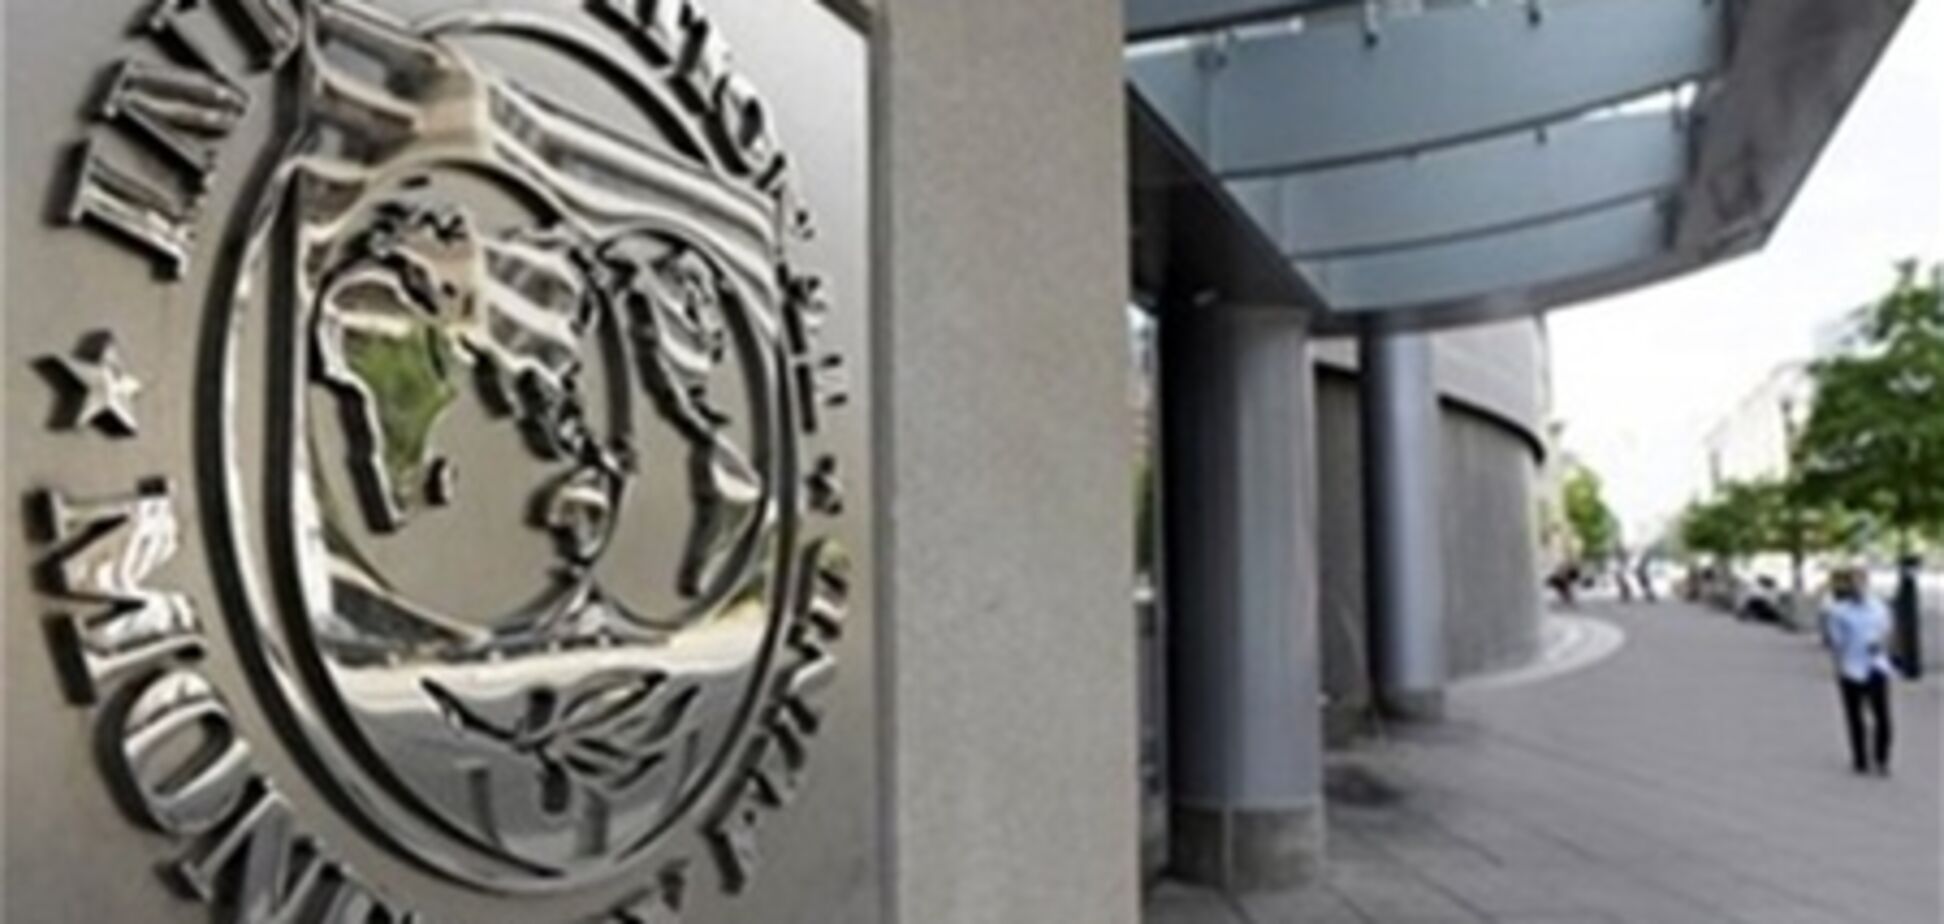 МВФ отказал Испании в финансовой помощи